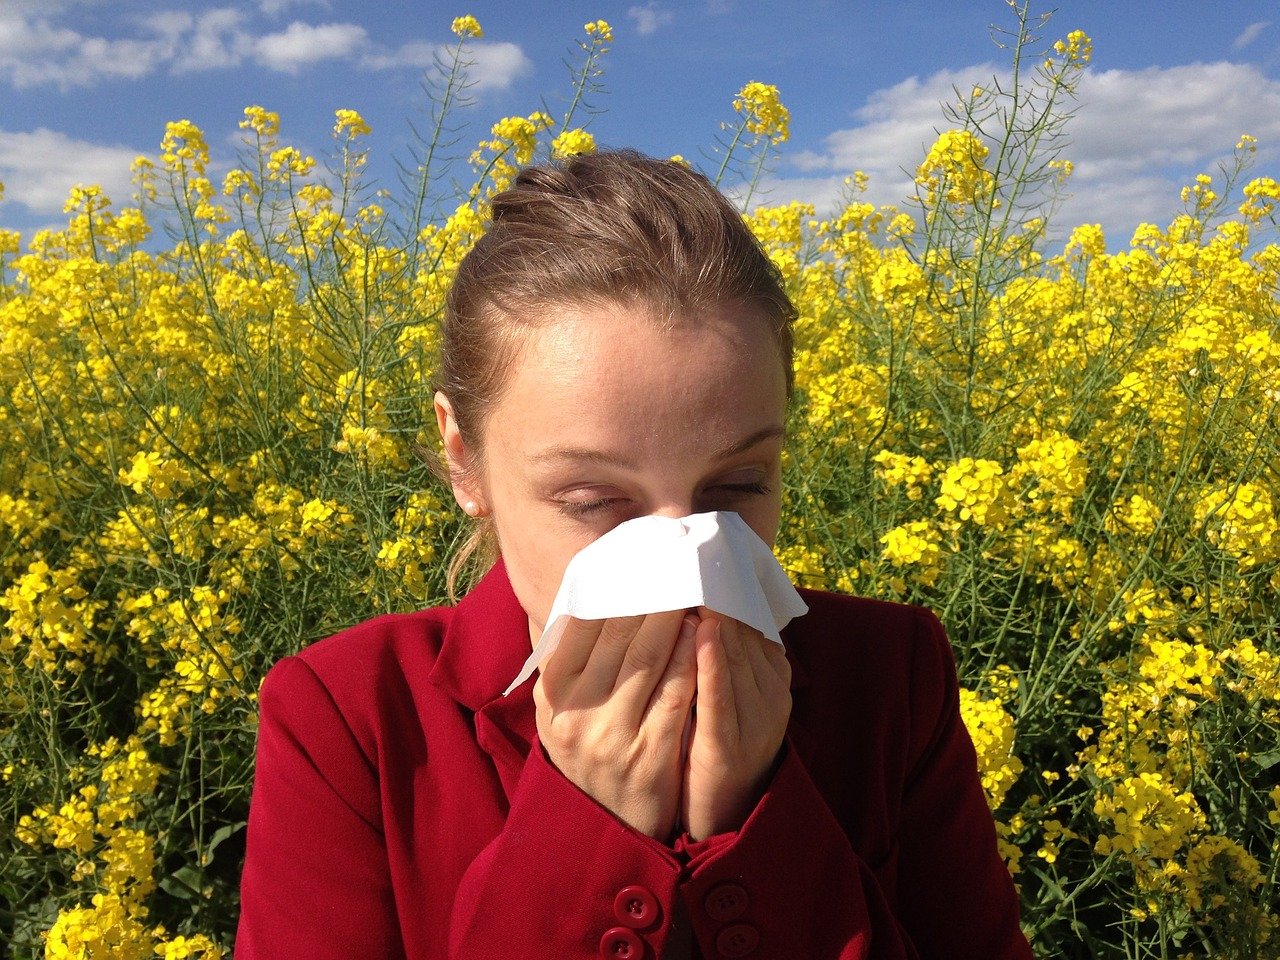  Mit kell tudni a pollenallergiáról?